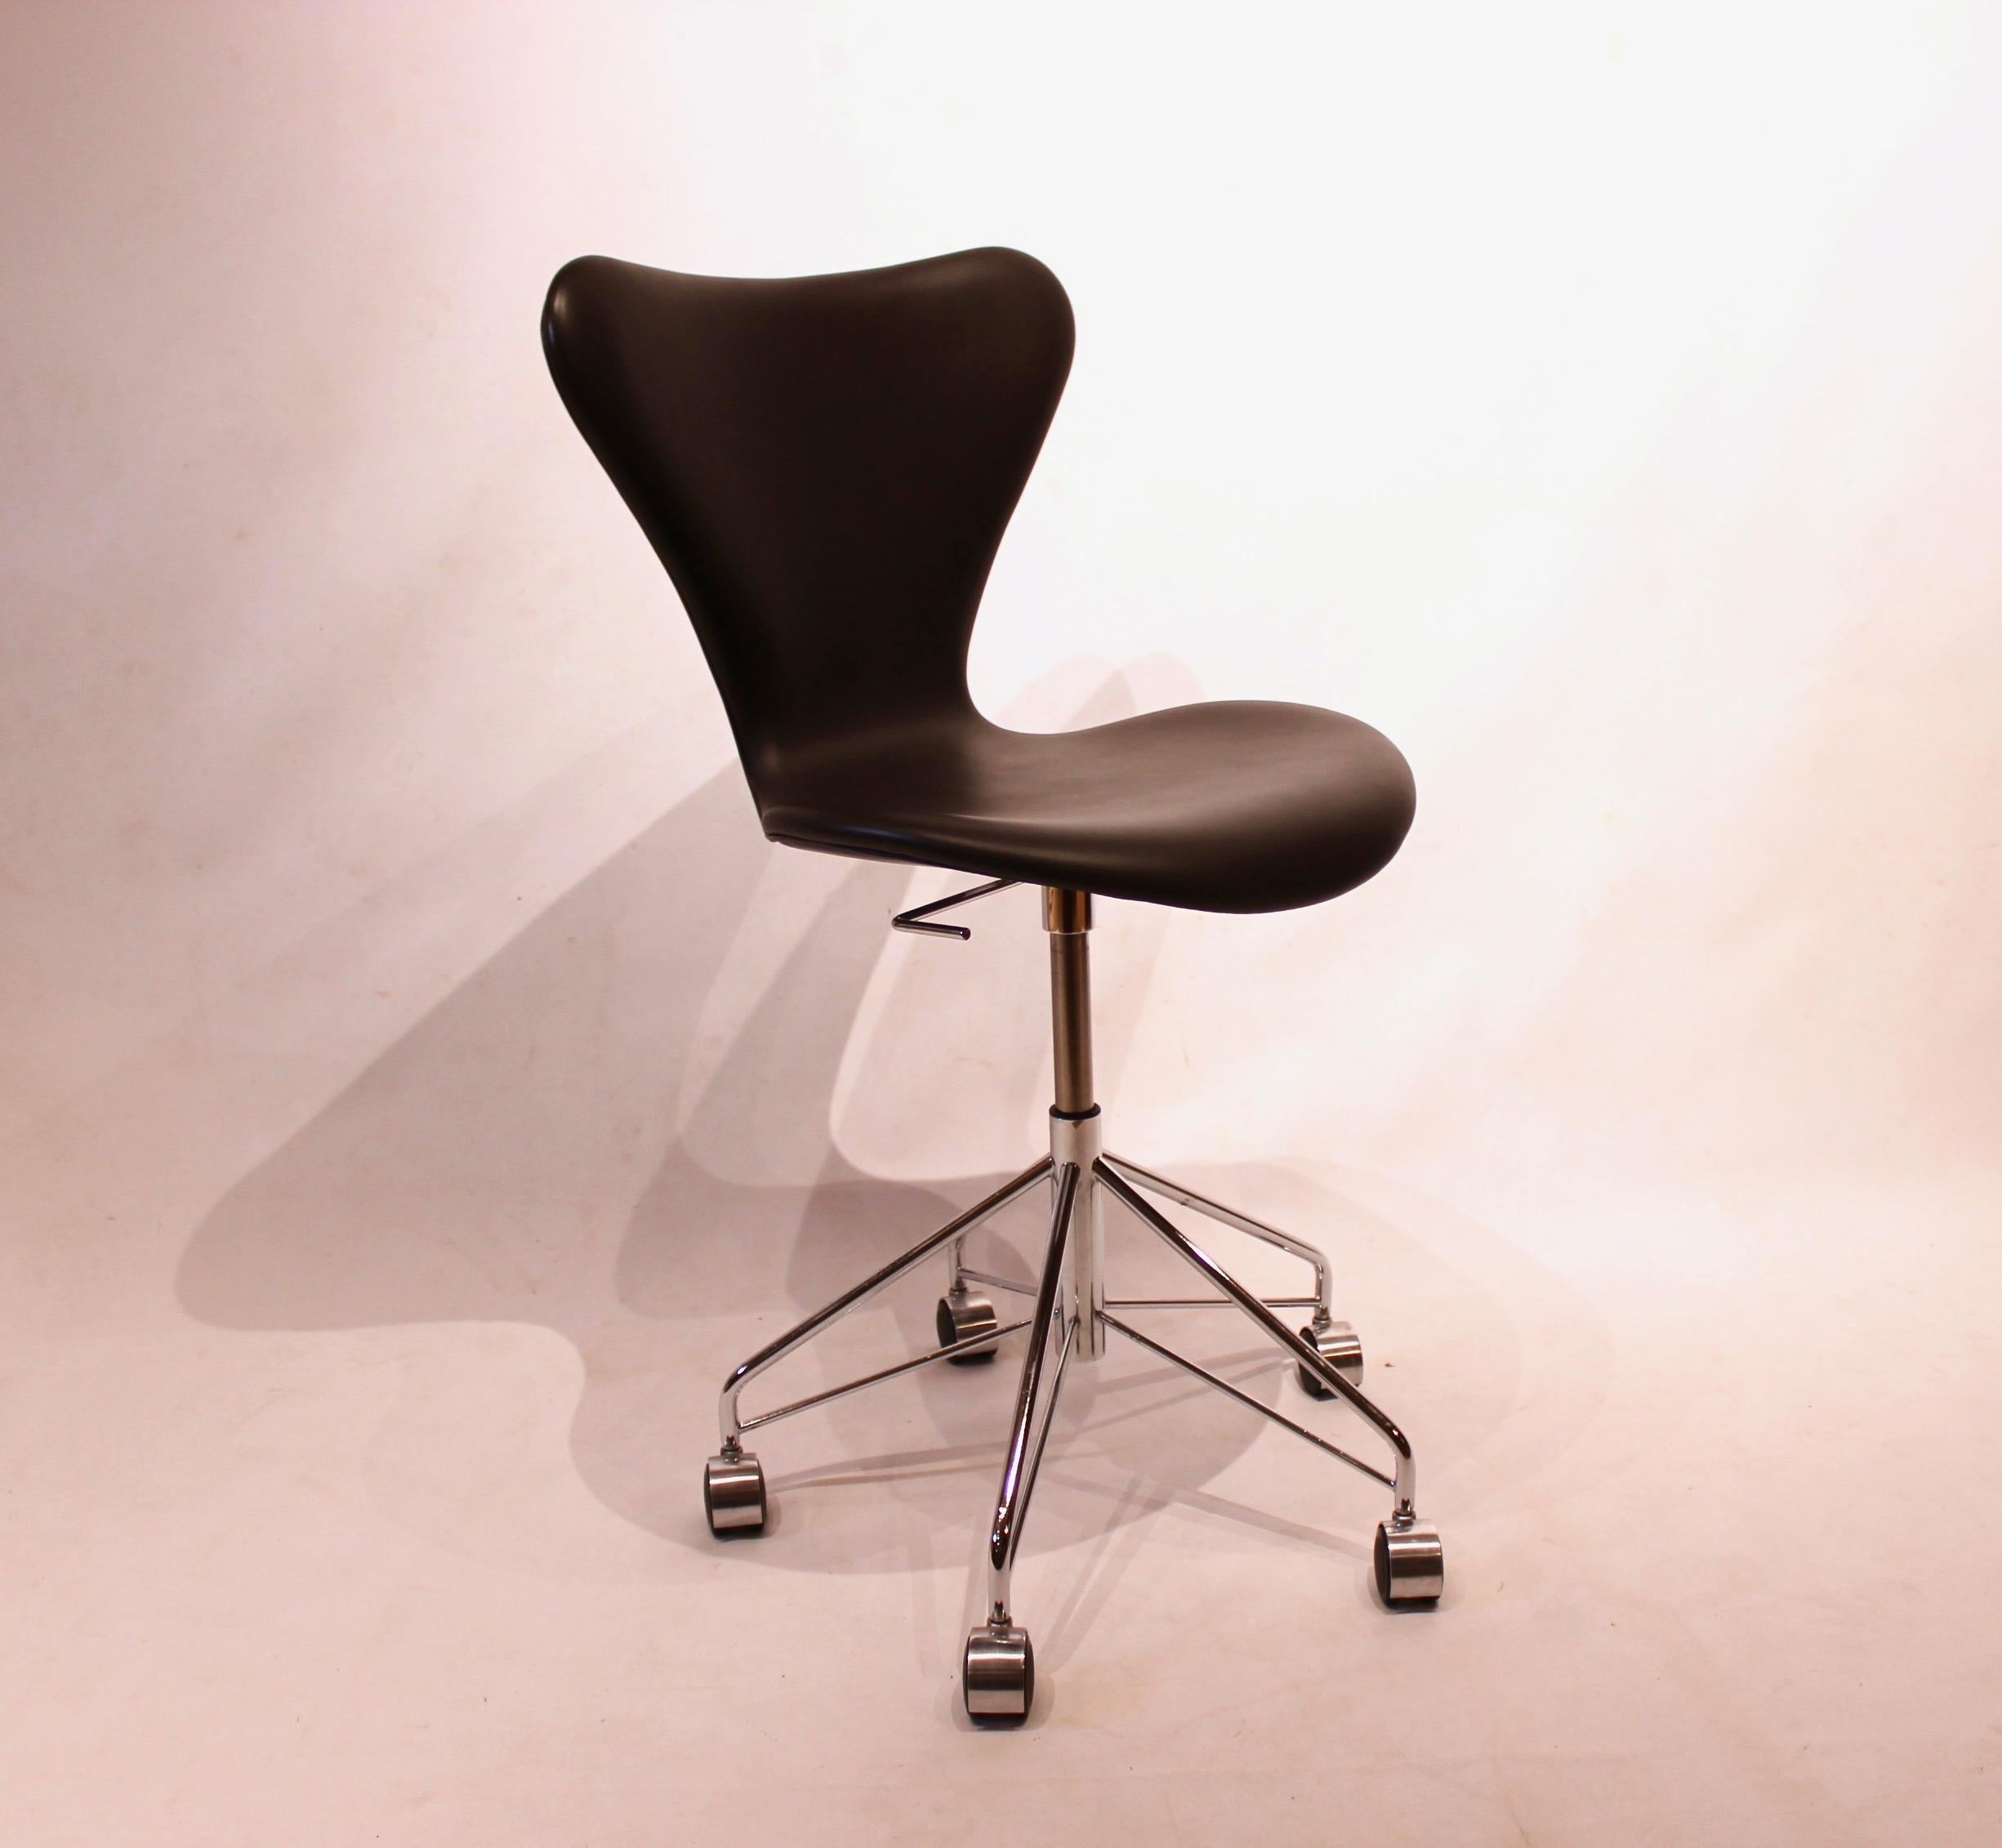 Der Drehstuhl der Serie 7™ 3117 wird von der weltberühmten dänischen Möbelfirma Fritz Hansen hergestellt. Der Stuhl ist aus schwarzem Leder gefertigt und hat ein elegantes Design mit Beinen aus verchromtem Stahl. Er ist vollständig gepolstert, damit